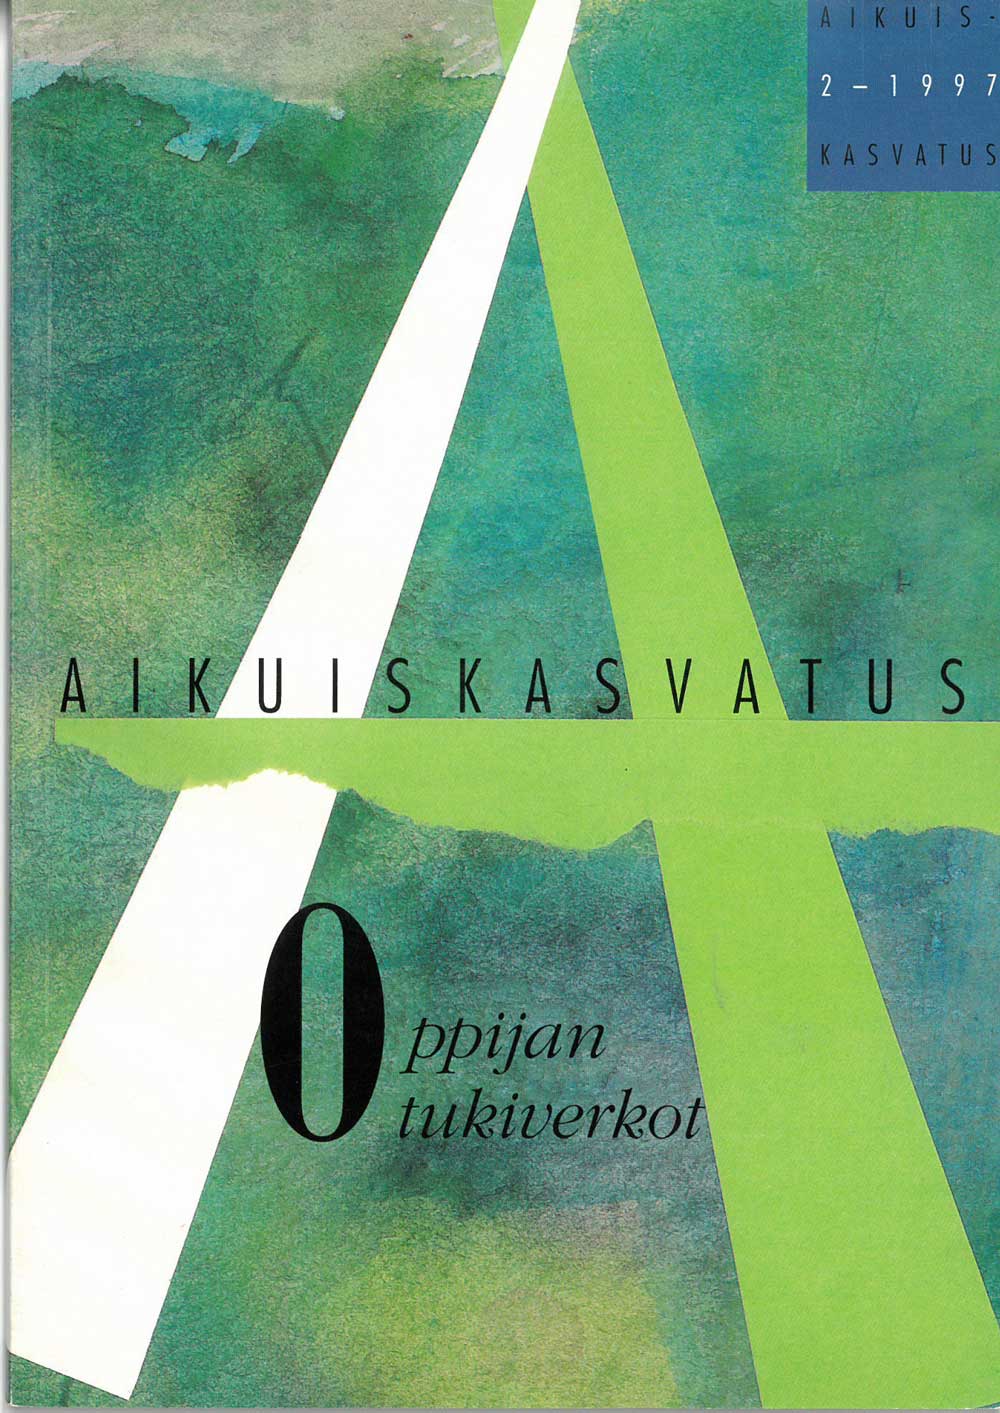 Aikuiskasvatuksen 2/1997 kansi; alaotsikkona Oppijan tukiverkot